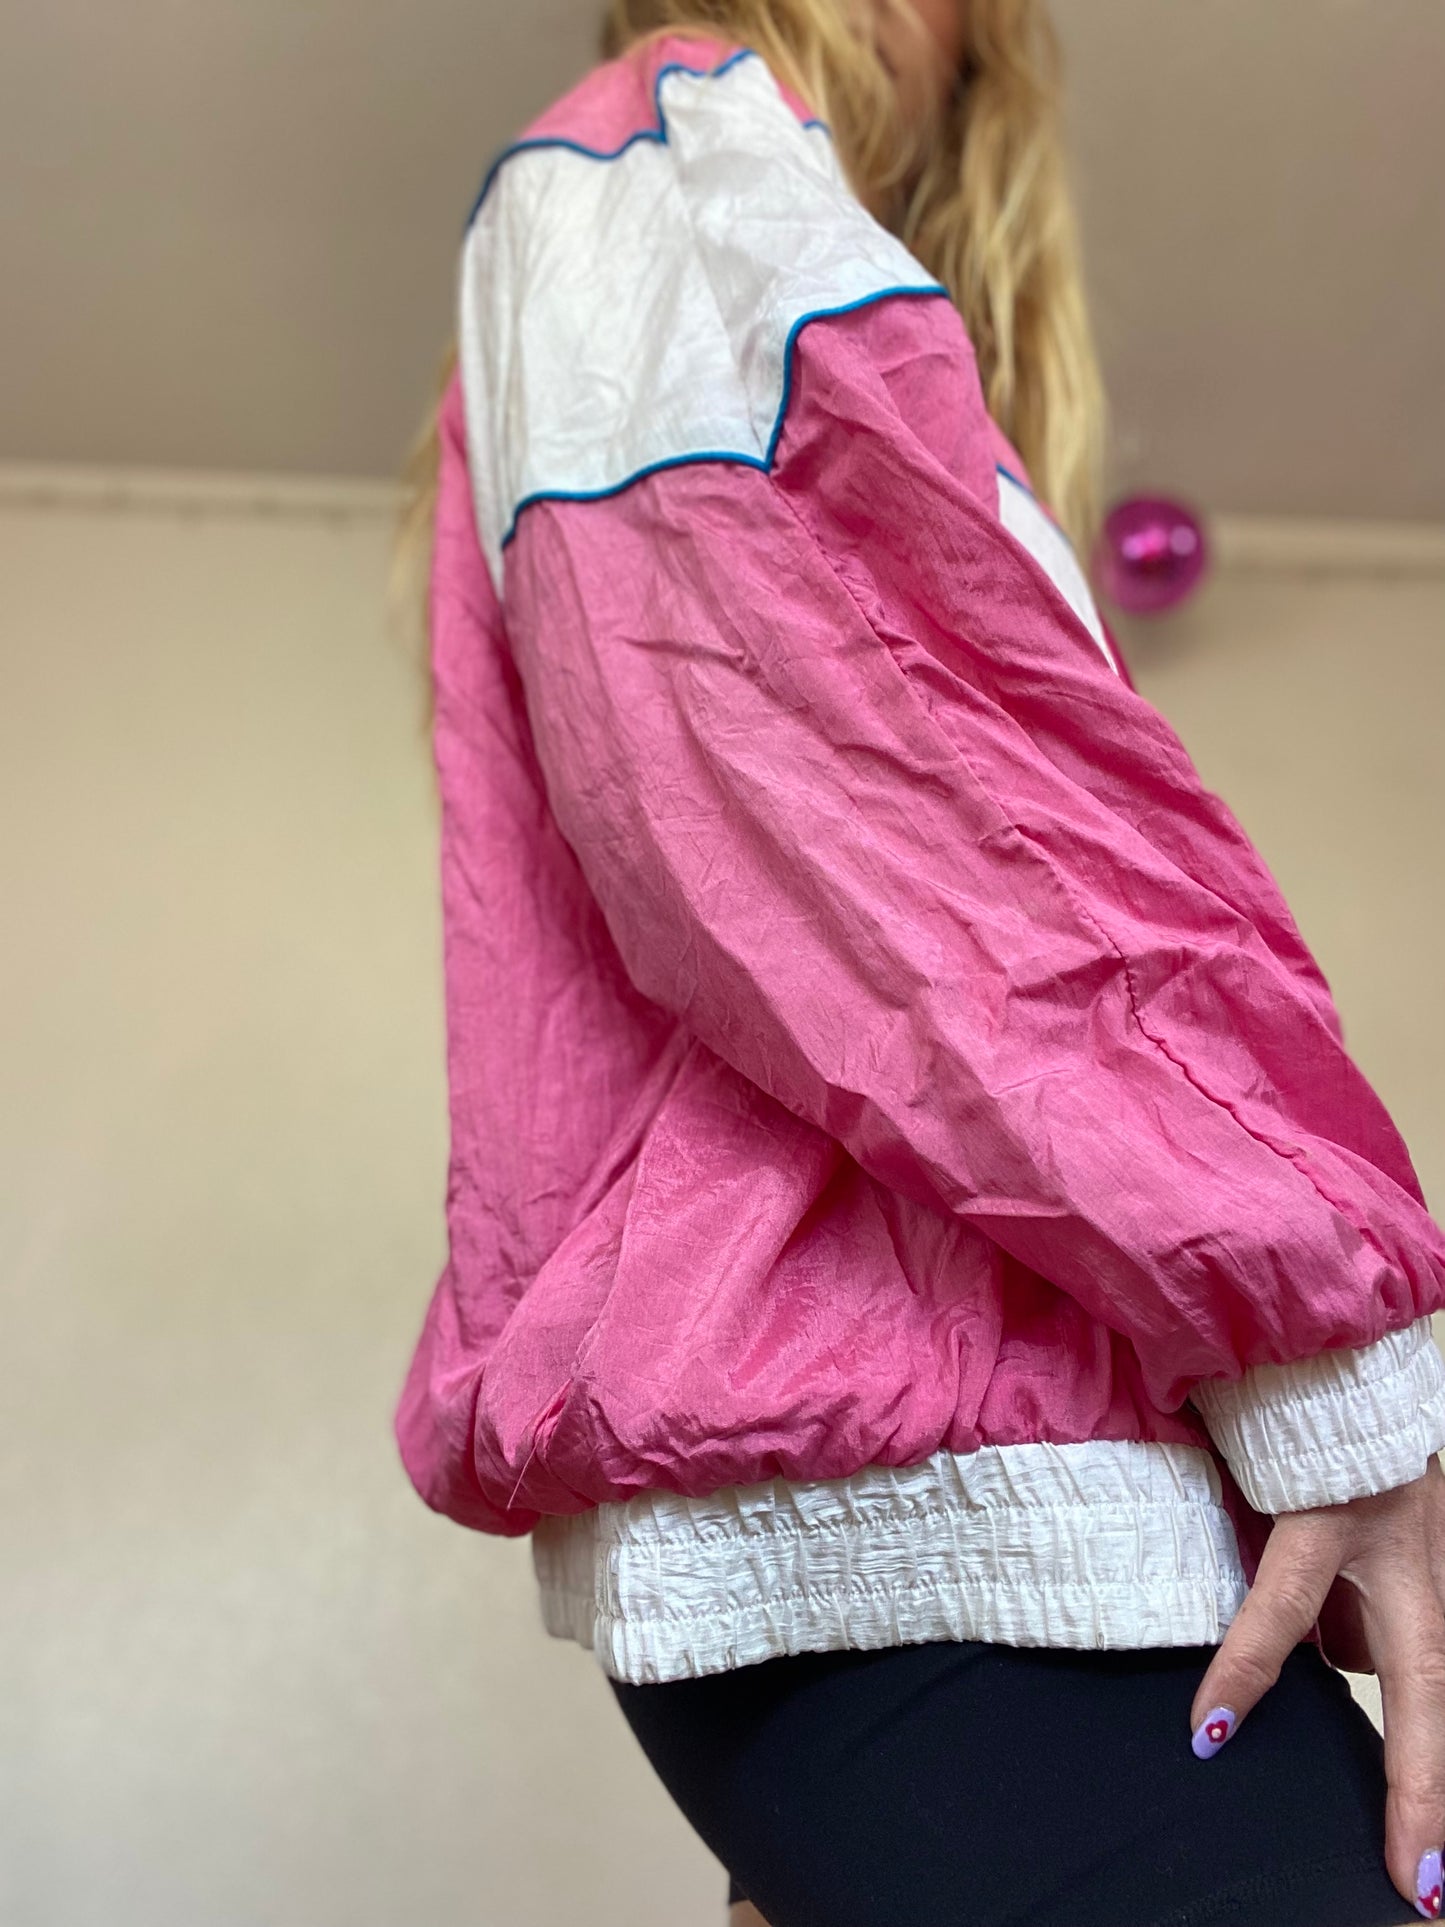 Vintage Pink and Blue Track Jacket (720)